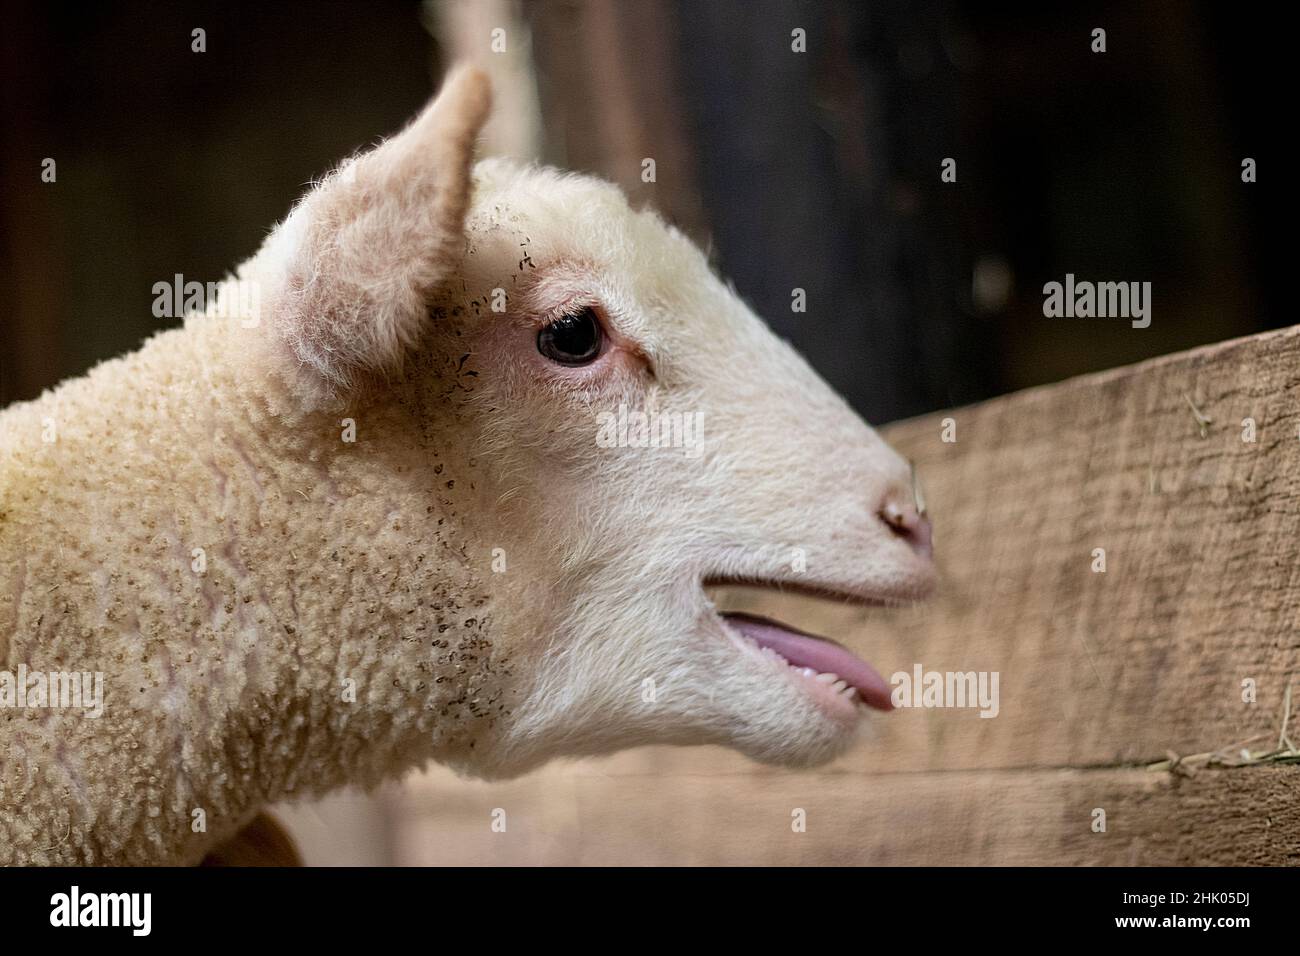 Baby Lamm gebleicht oder baaing für die Mutter Mutterschafe oder Schafe in der Scheune mit seiner Zunge herausragend Stockfoto